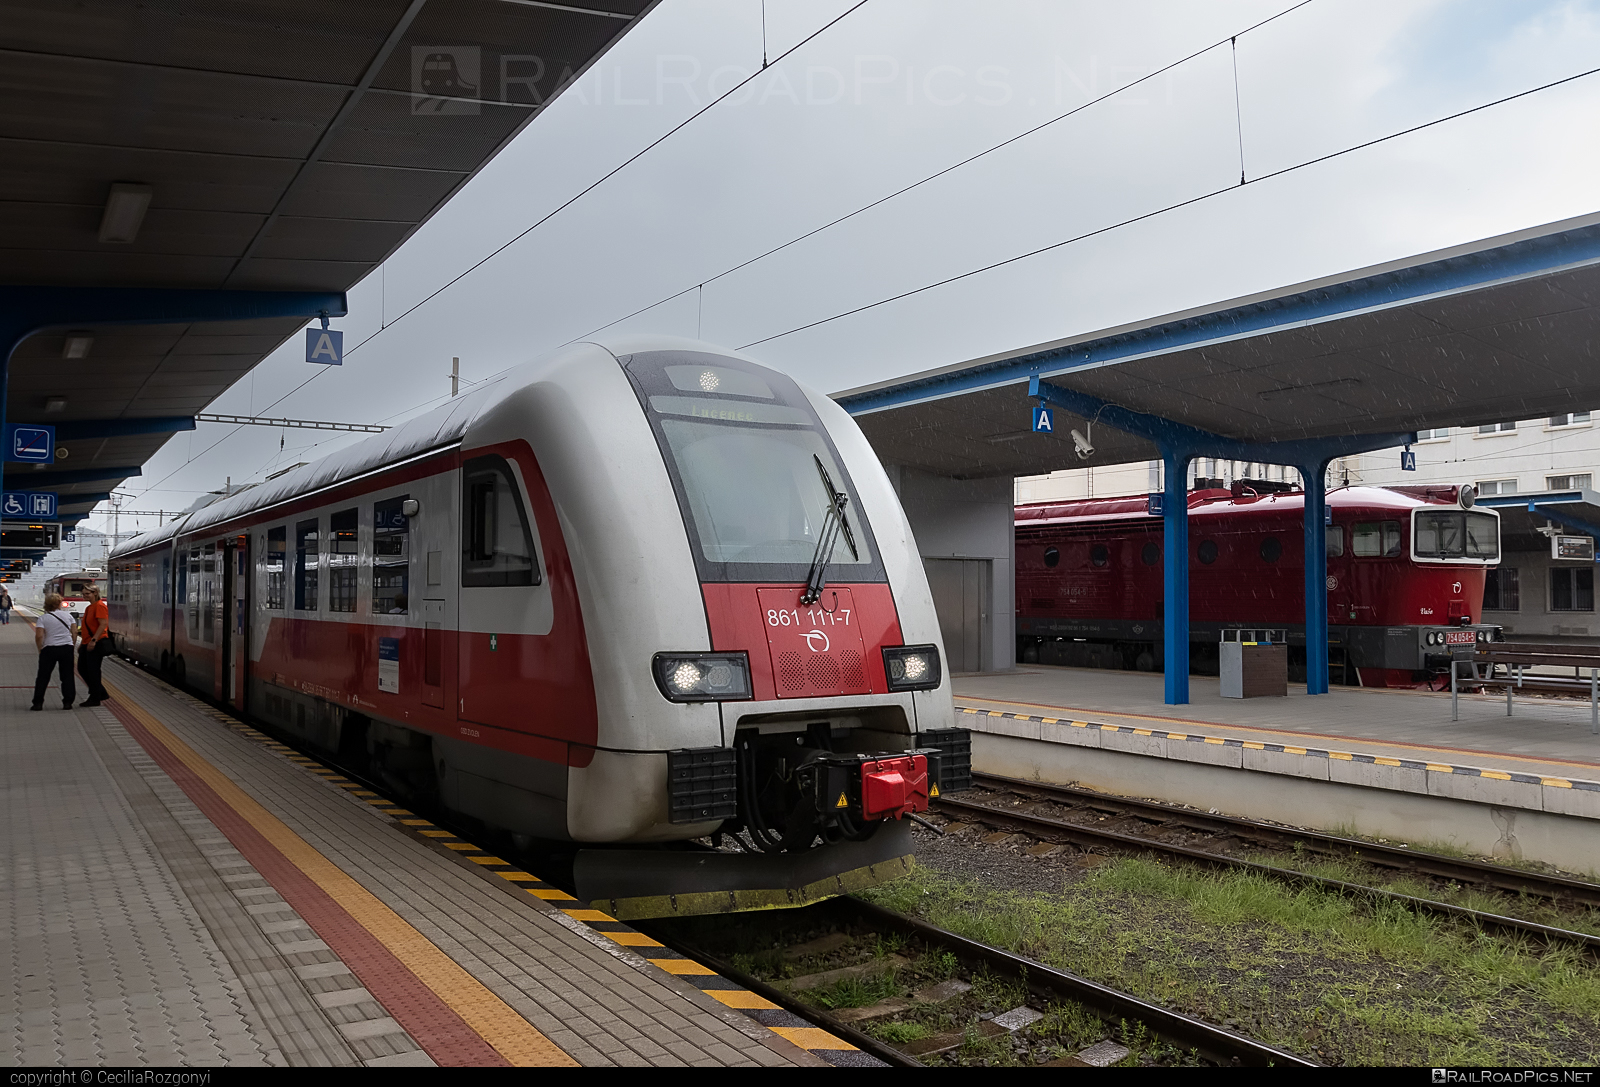 ŽOS Vrútky Class 861.0 - 861 111-7 operated by Železničná Spoločnost' Slovensko, a.s. #ZeleznicnaSpolocnostSlovensko #dunihlav #husenica #zosvrutky #zosvrutky861 #zosvrutky8610 #zssk #zssk861 #zssk8610